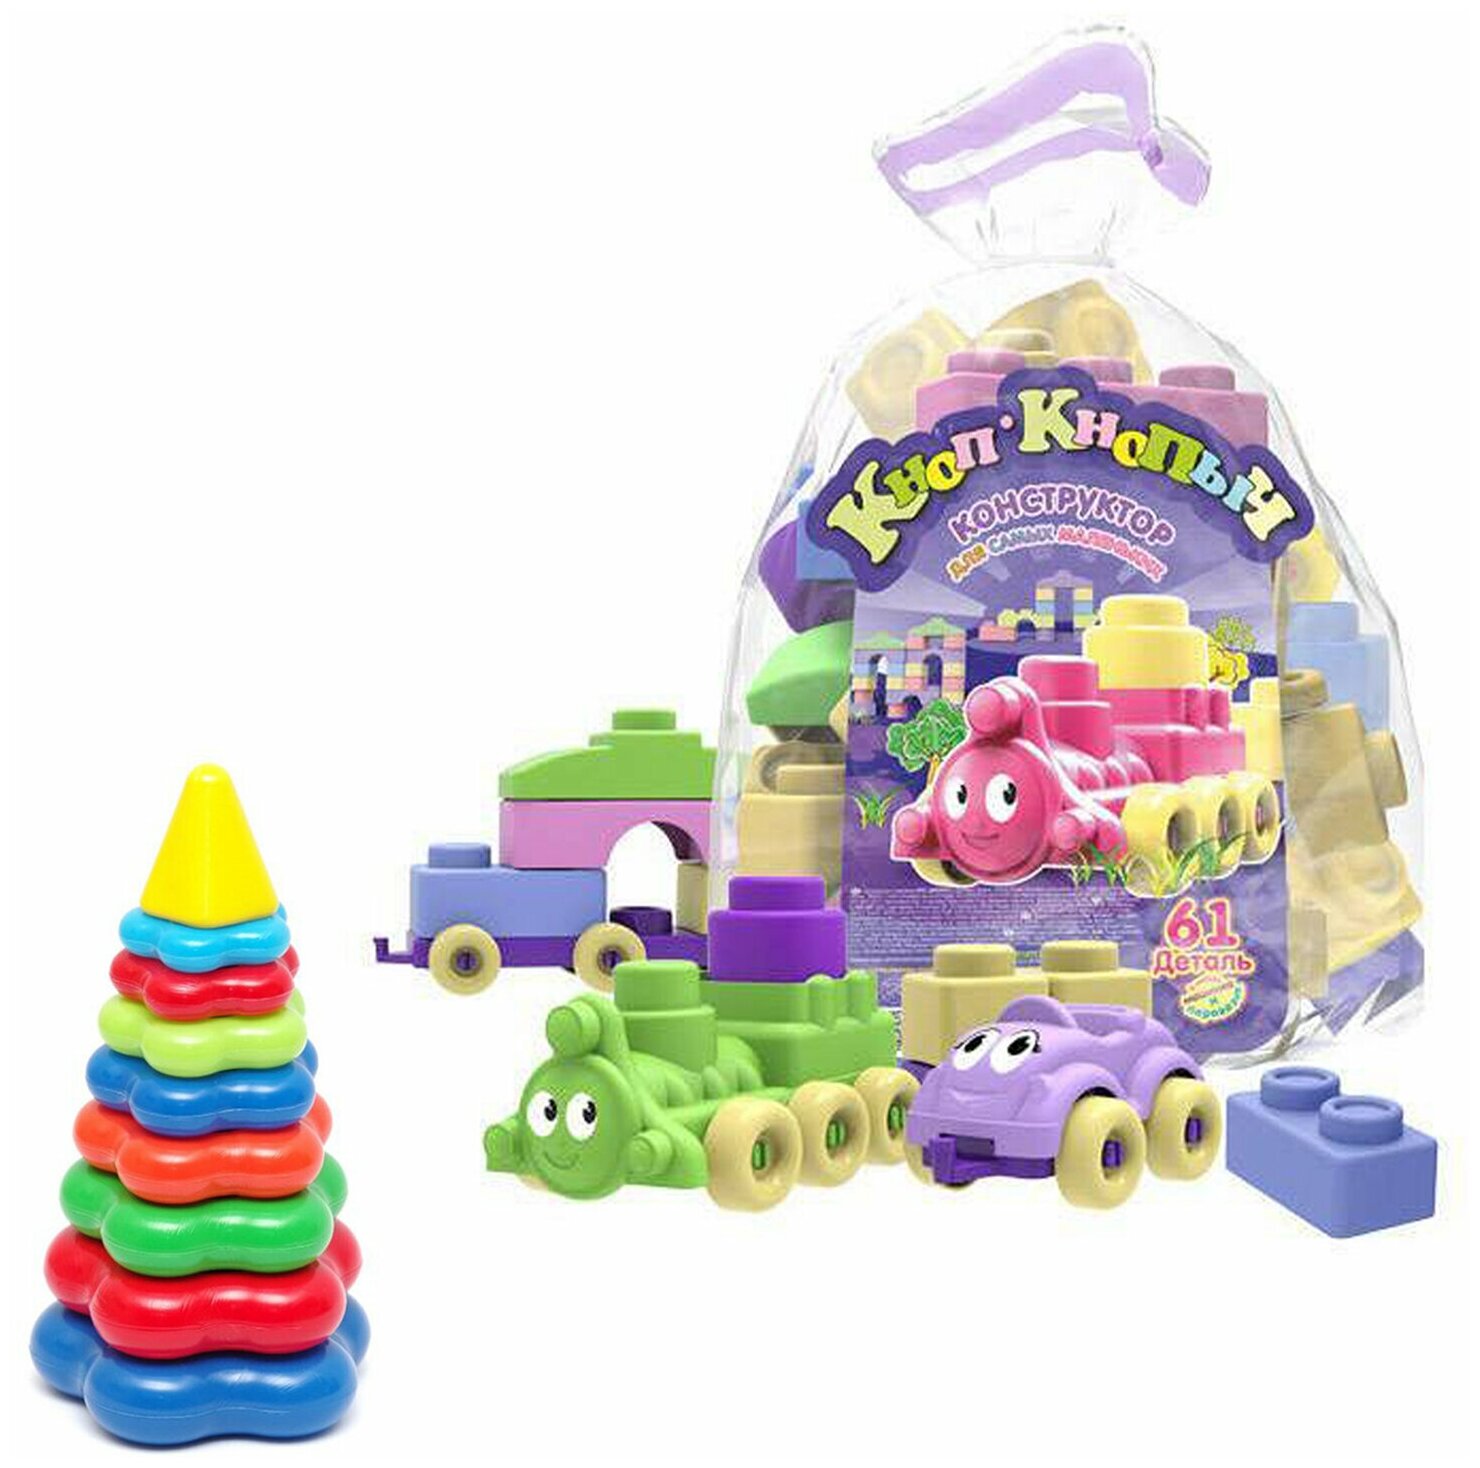 Развивающие игрушки для малышей набор Пирамидка детская большая + Конструктор "Кноп-Кнопыч" 61 дет. Пастель